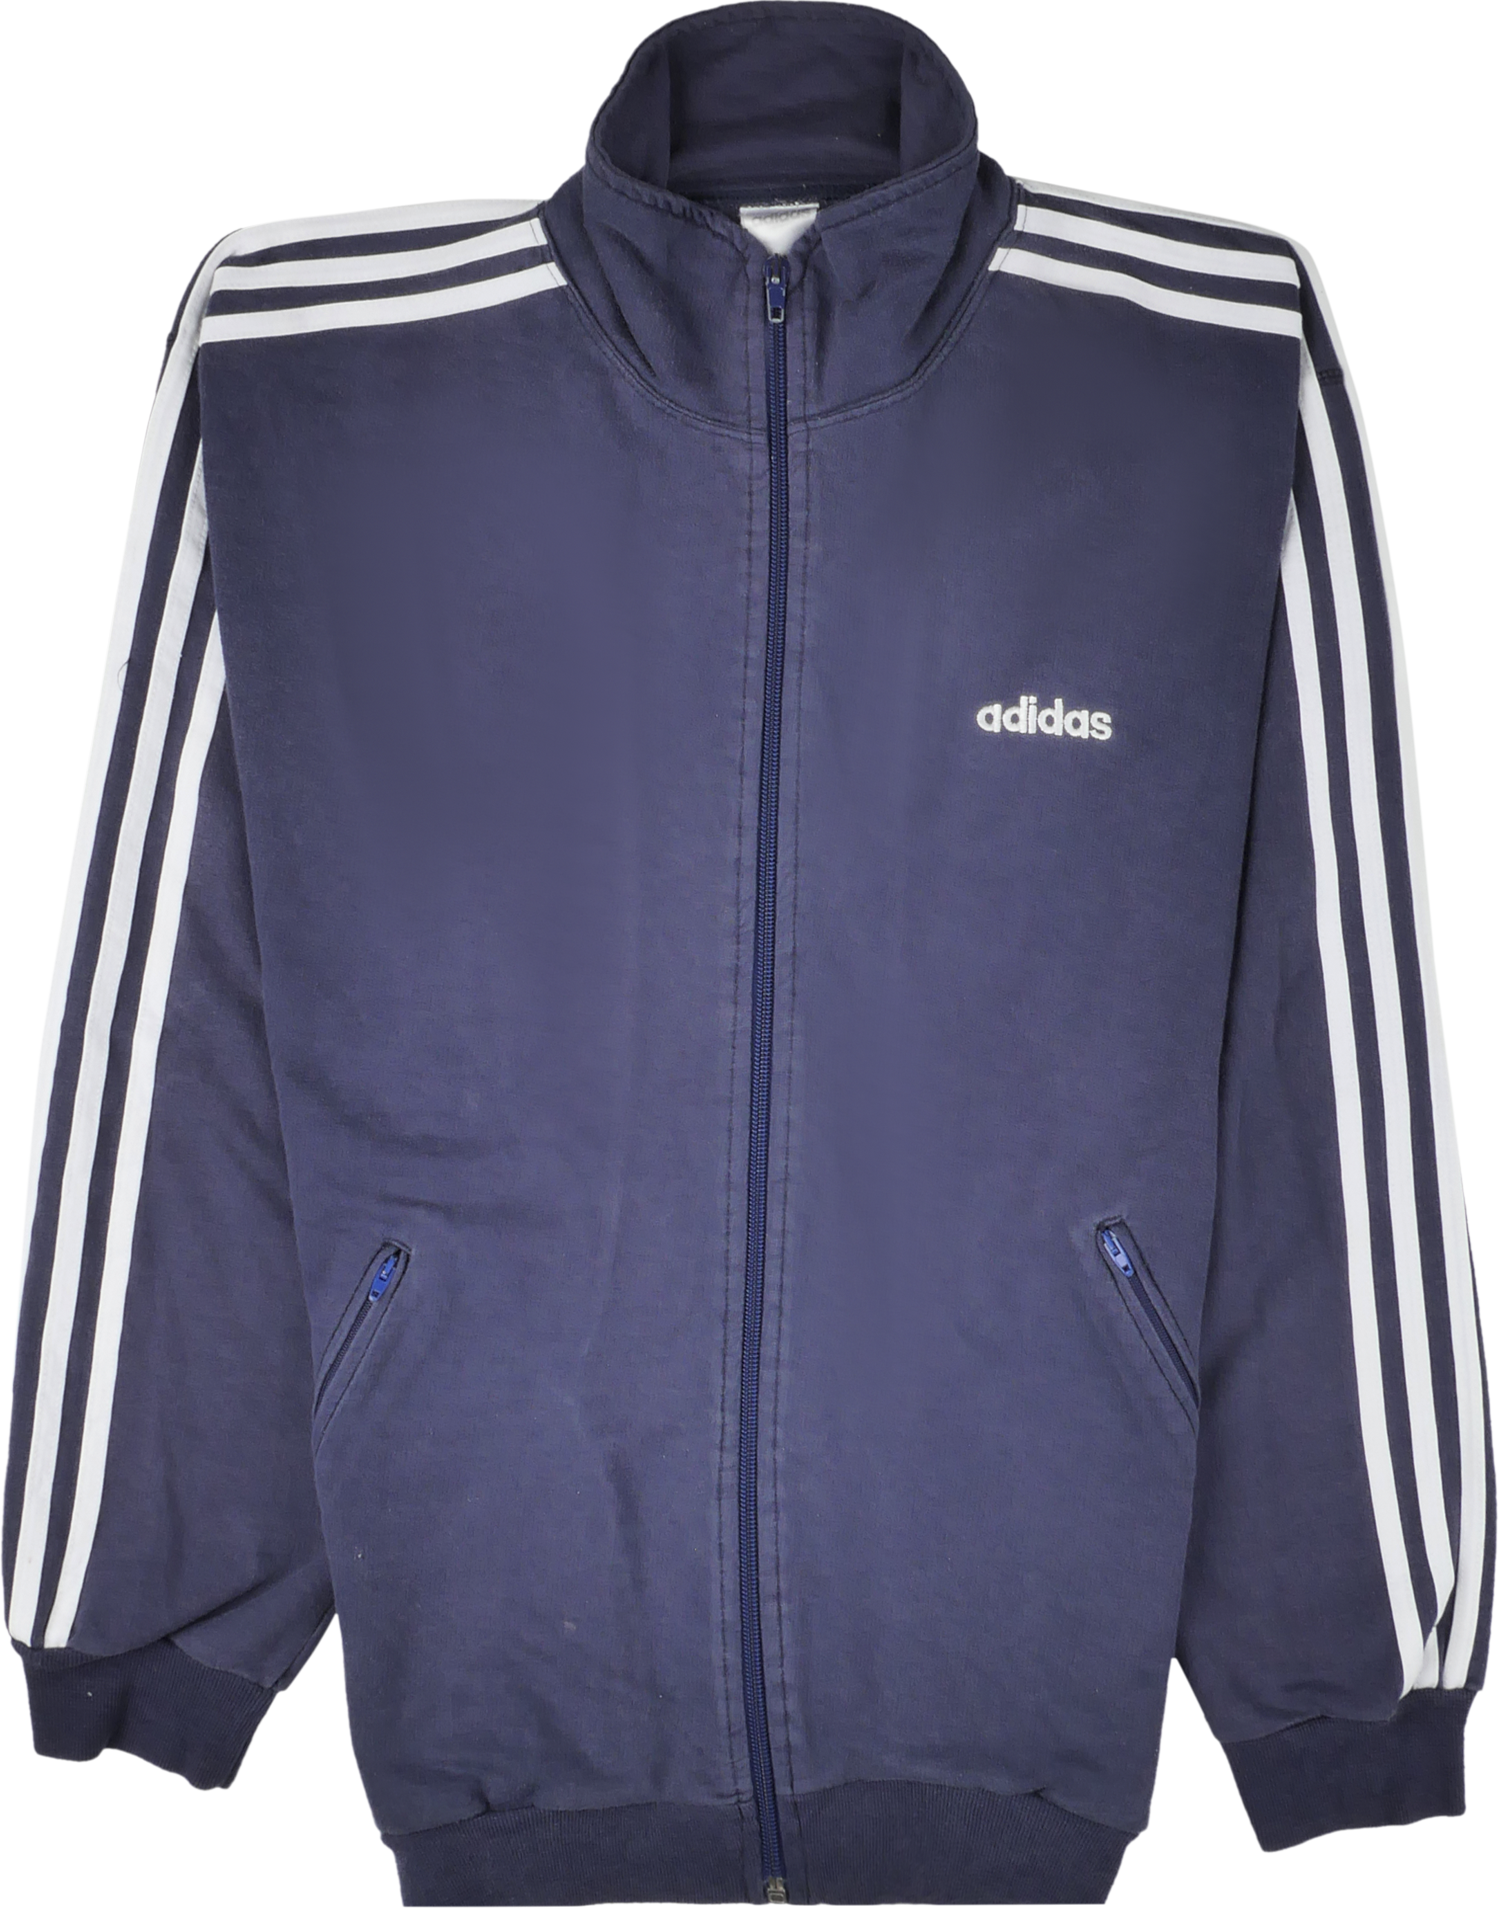 Adidas Zip Pullover blau